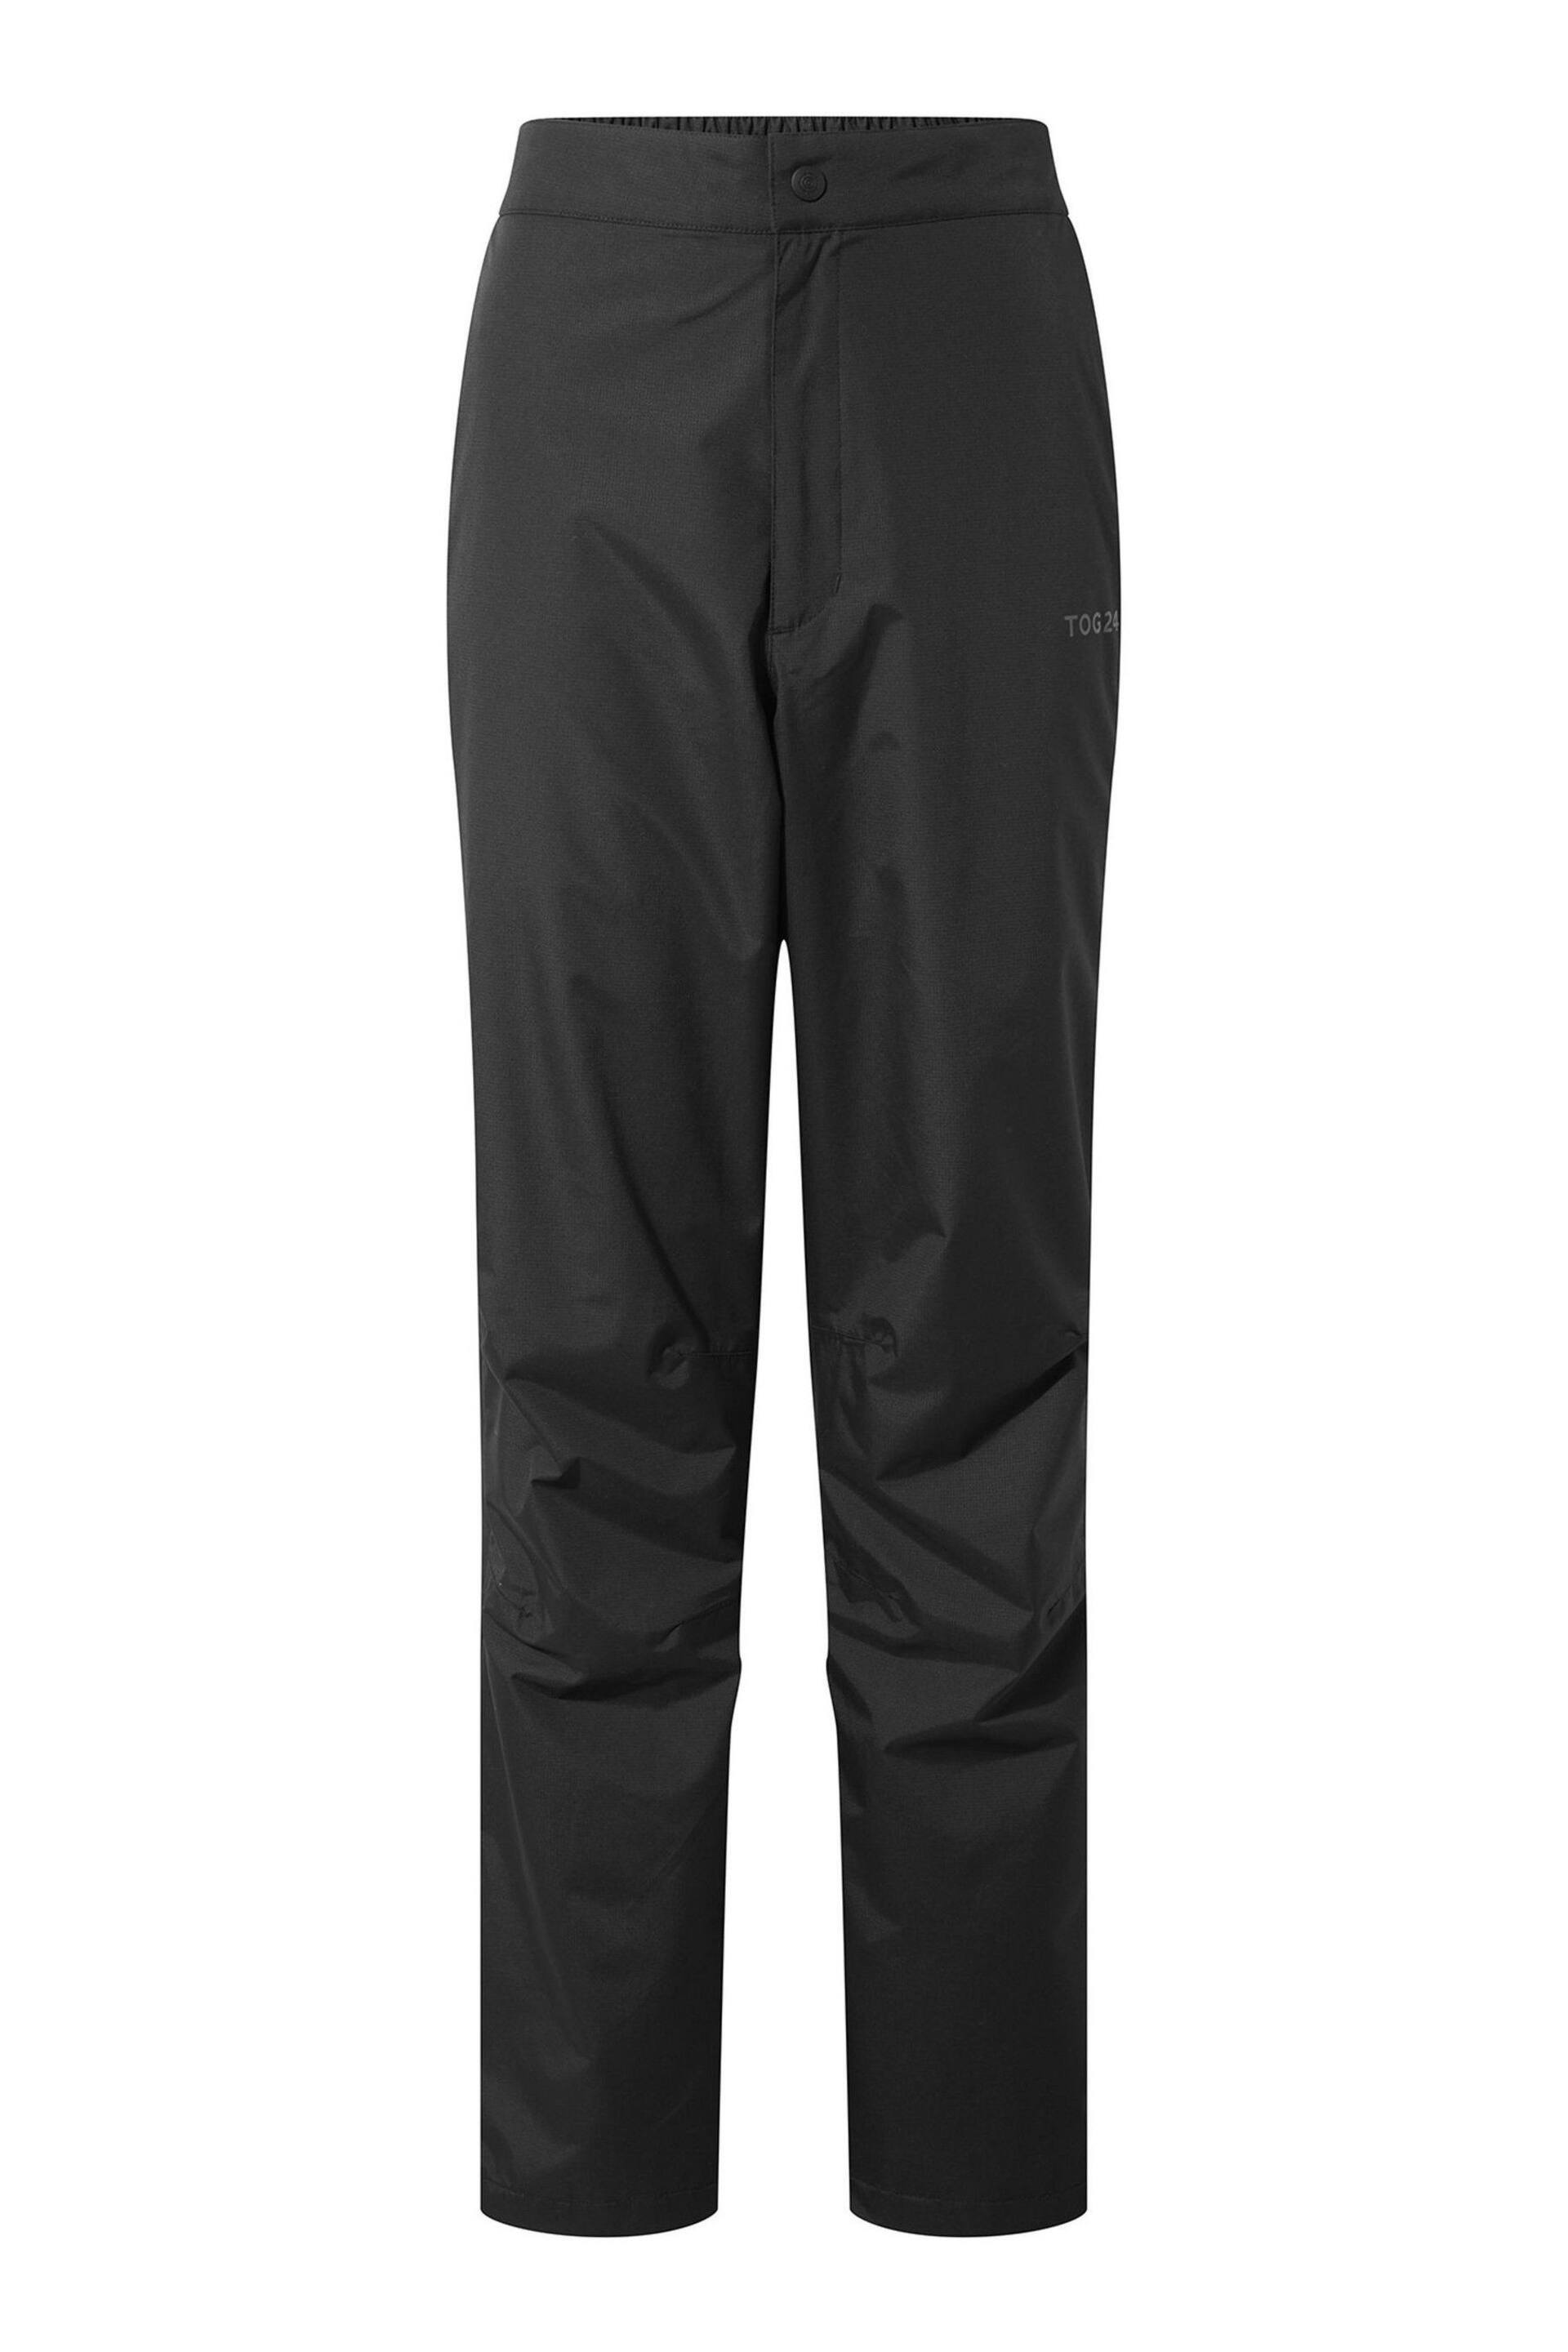 Tog 24 Black Wigton Waterproof Short Trousers - Image 5 of 5